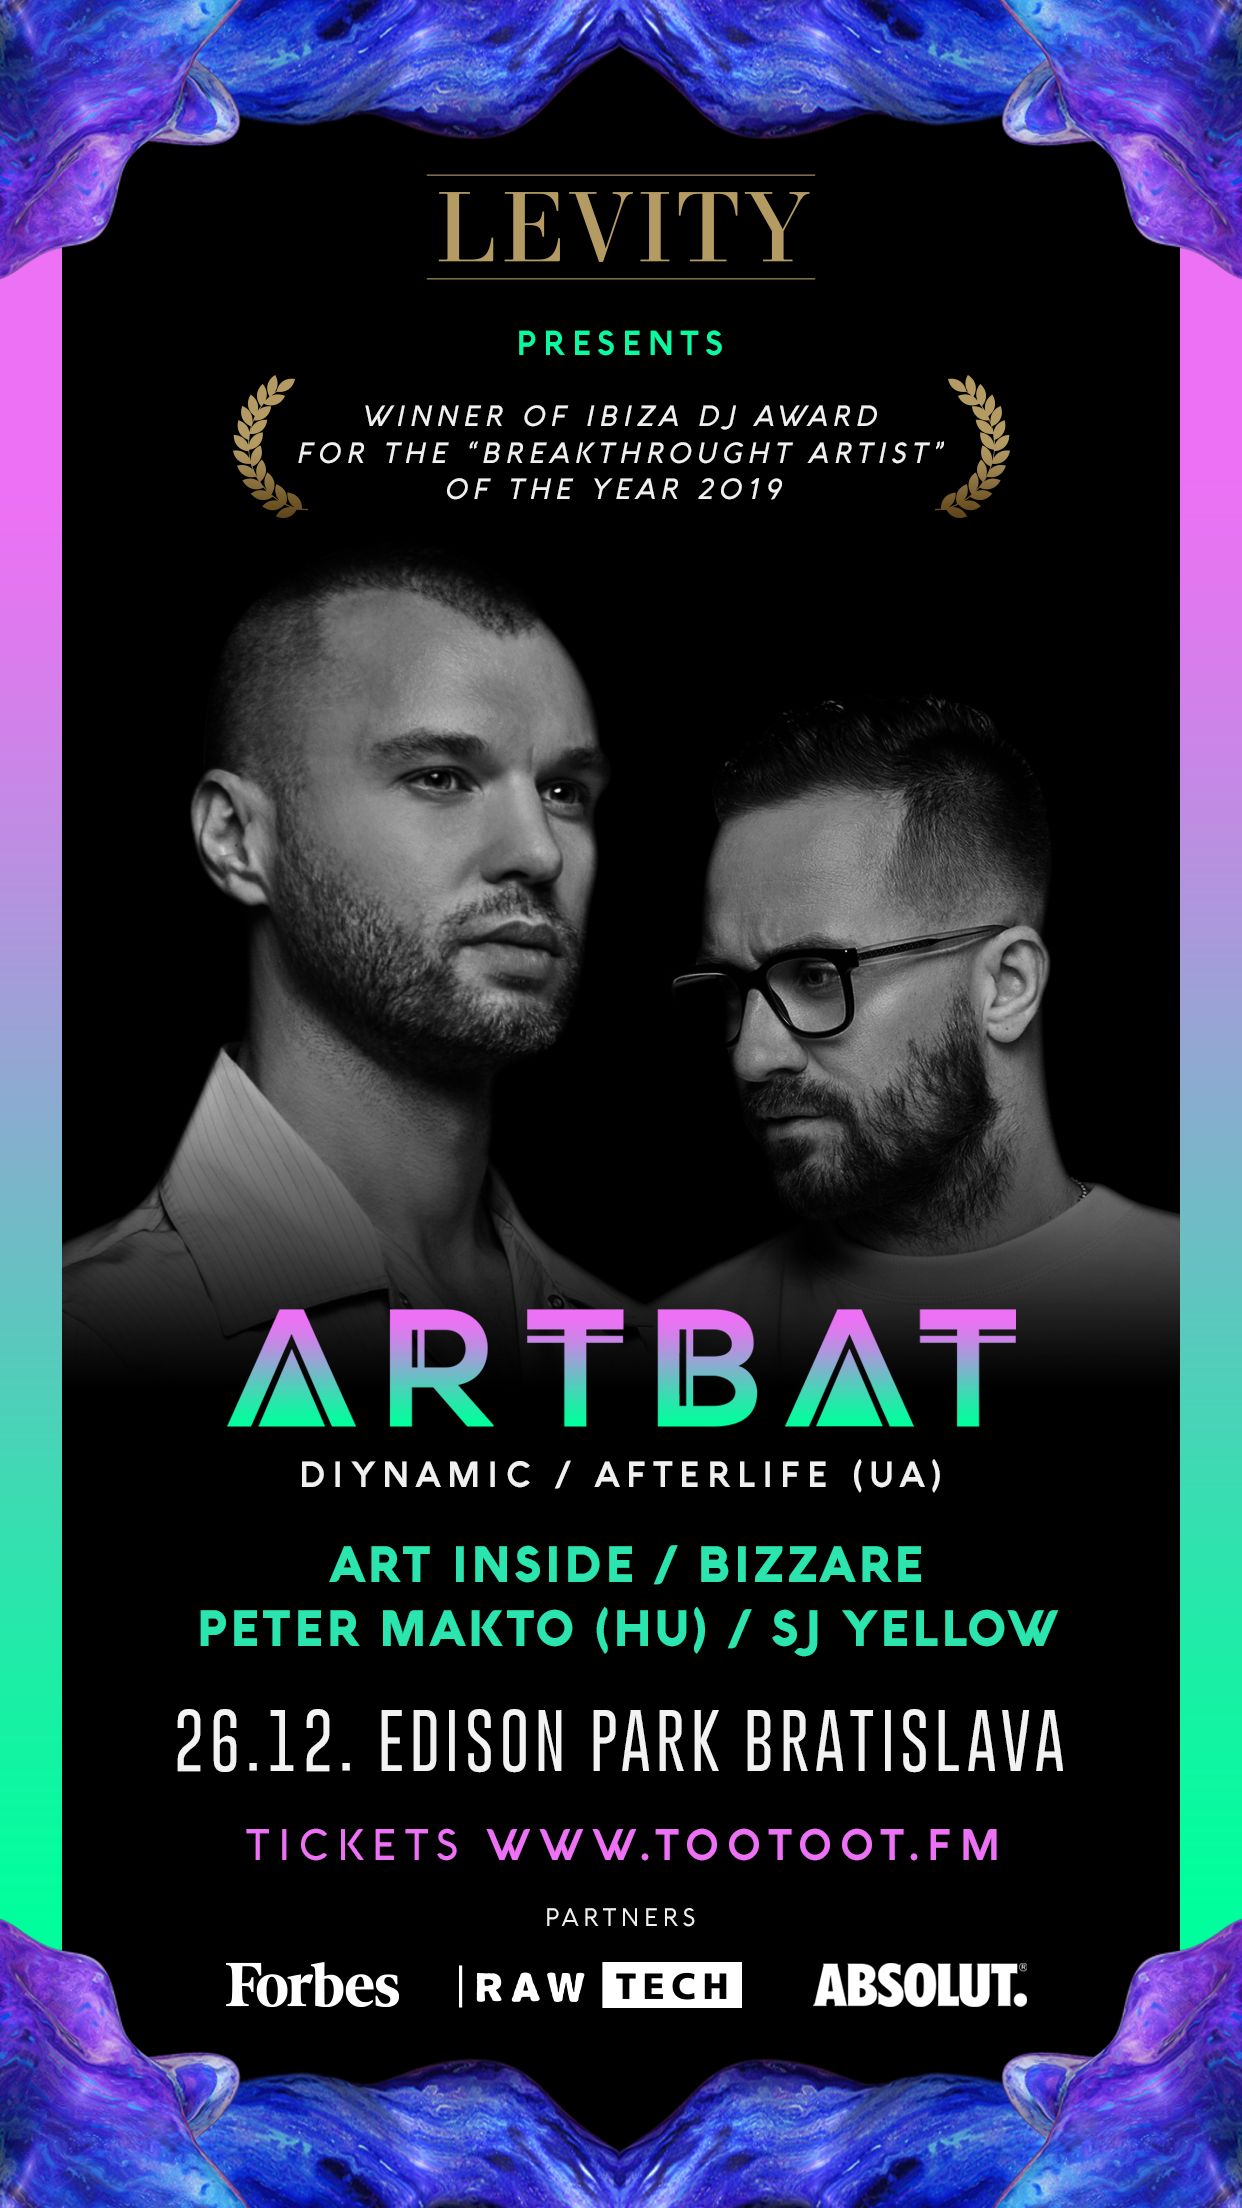 Ukrajinské hviezdne DJ duo ARTBAT sa predstaví na Melodic House & Techno party Levity v Bratislave